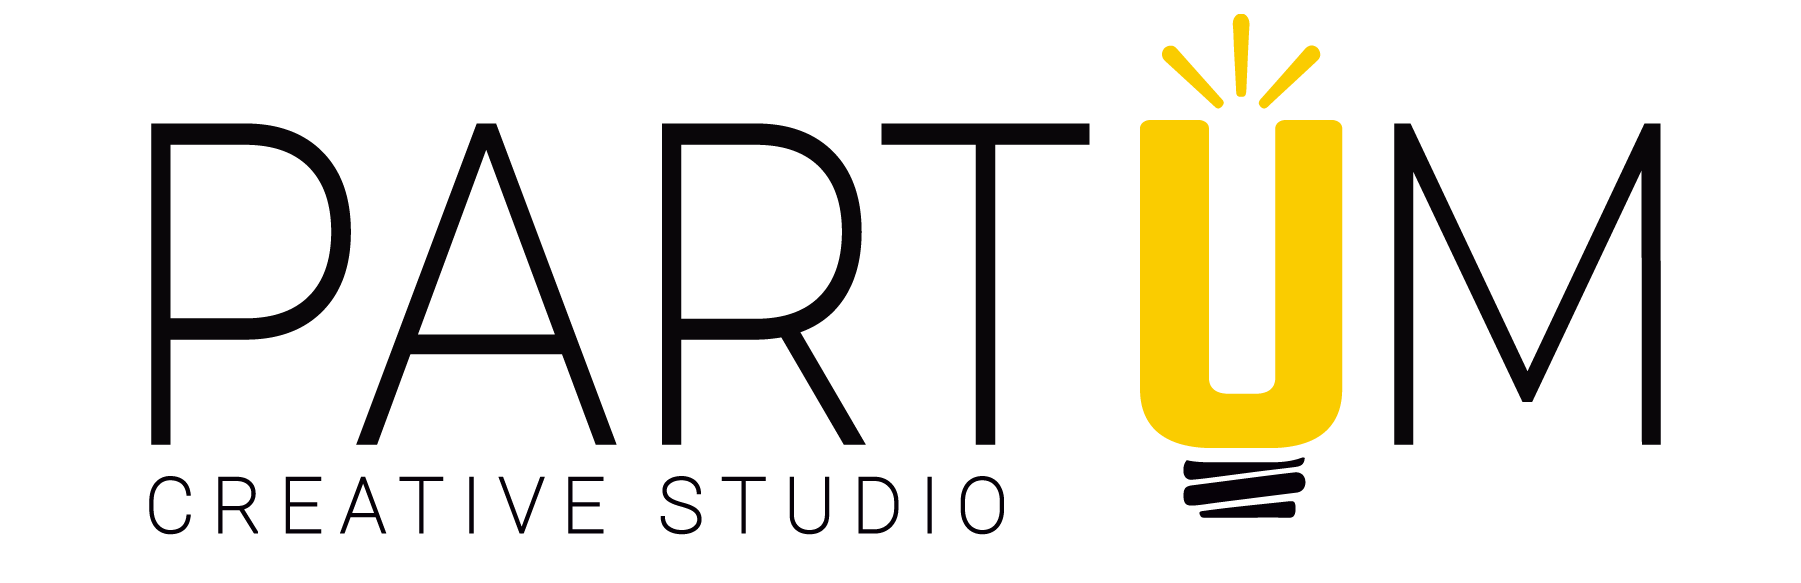 Partum Creative Studio - Logo - 02